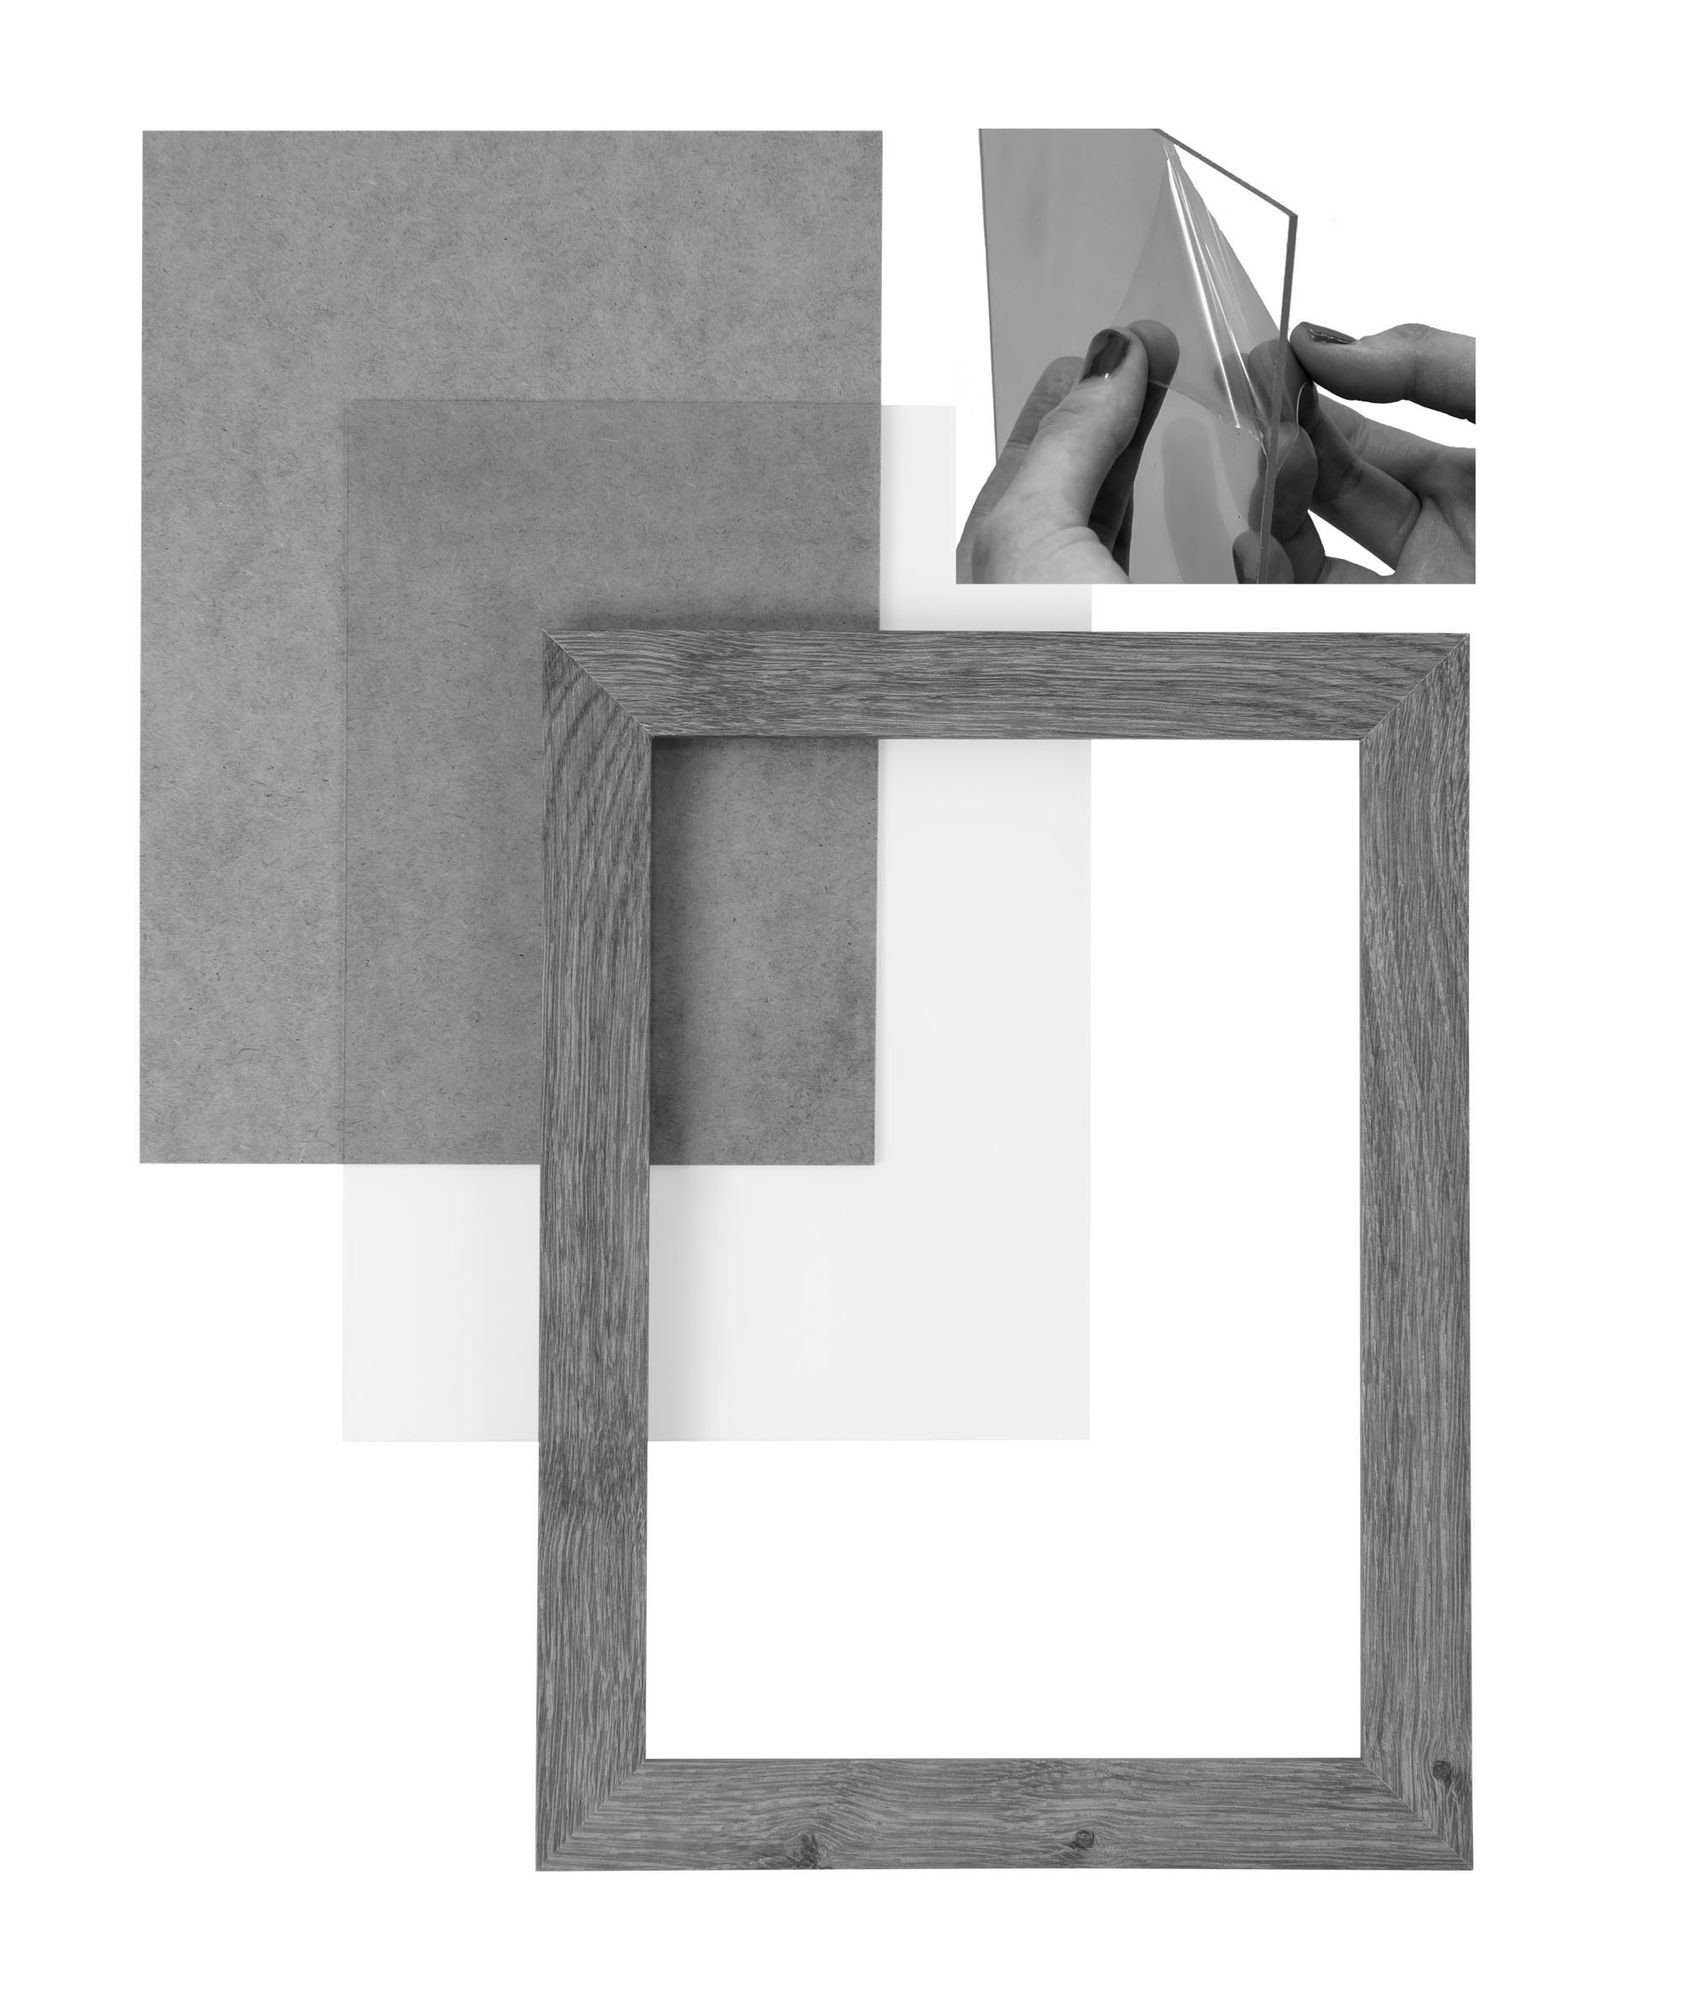 nach CLAMARO Moderner Maß in 51x71 Rahmen Bilderrahmen Clamaro handgefertigt MDF Holz FSC® Rückwand Acrylglas, Bilderrahmen eiche sonama und inkl. 'Collage' eckiger Aufhänger